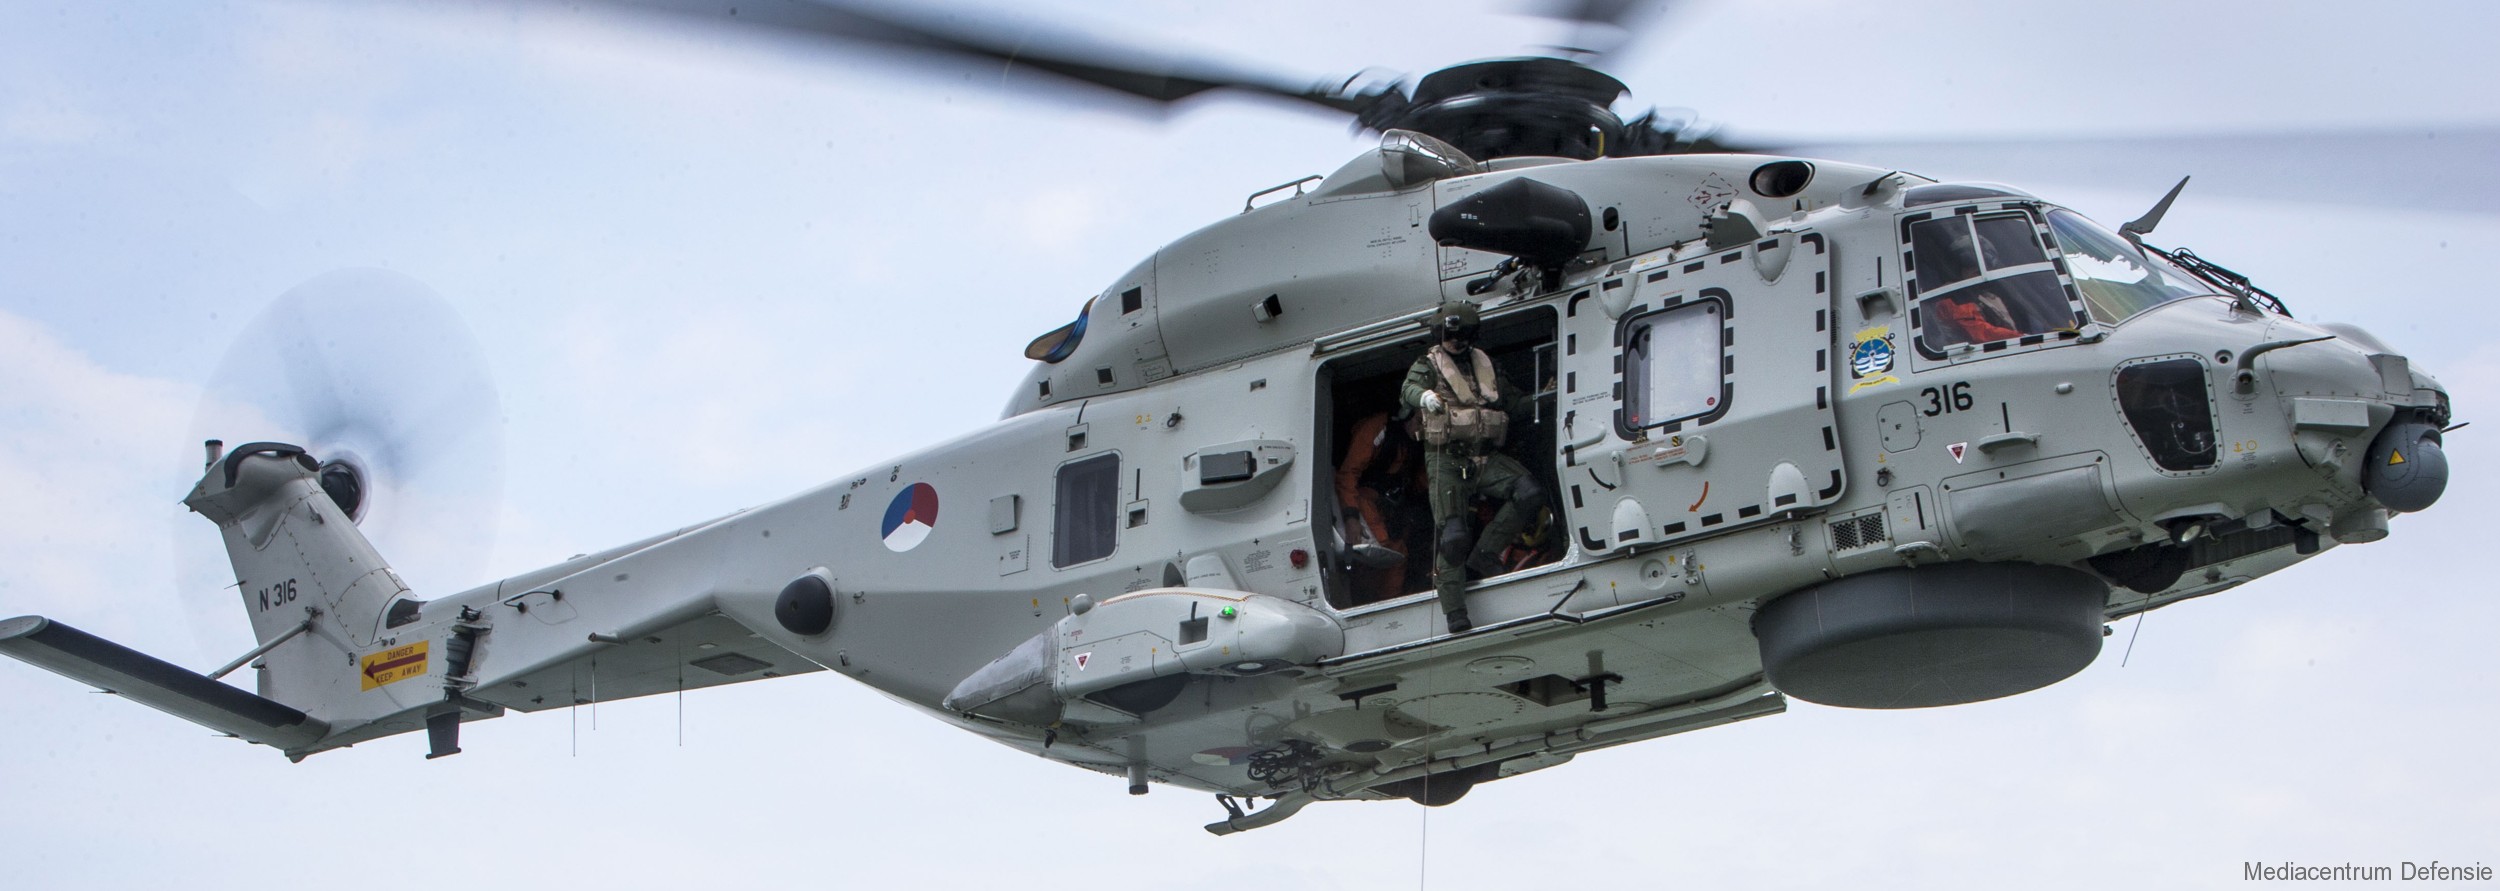 nh90 nfh helicopter royal netherlands navy koninklijke marine n-316 02